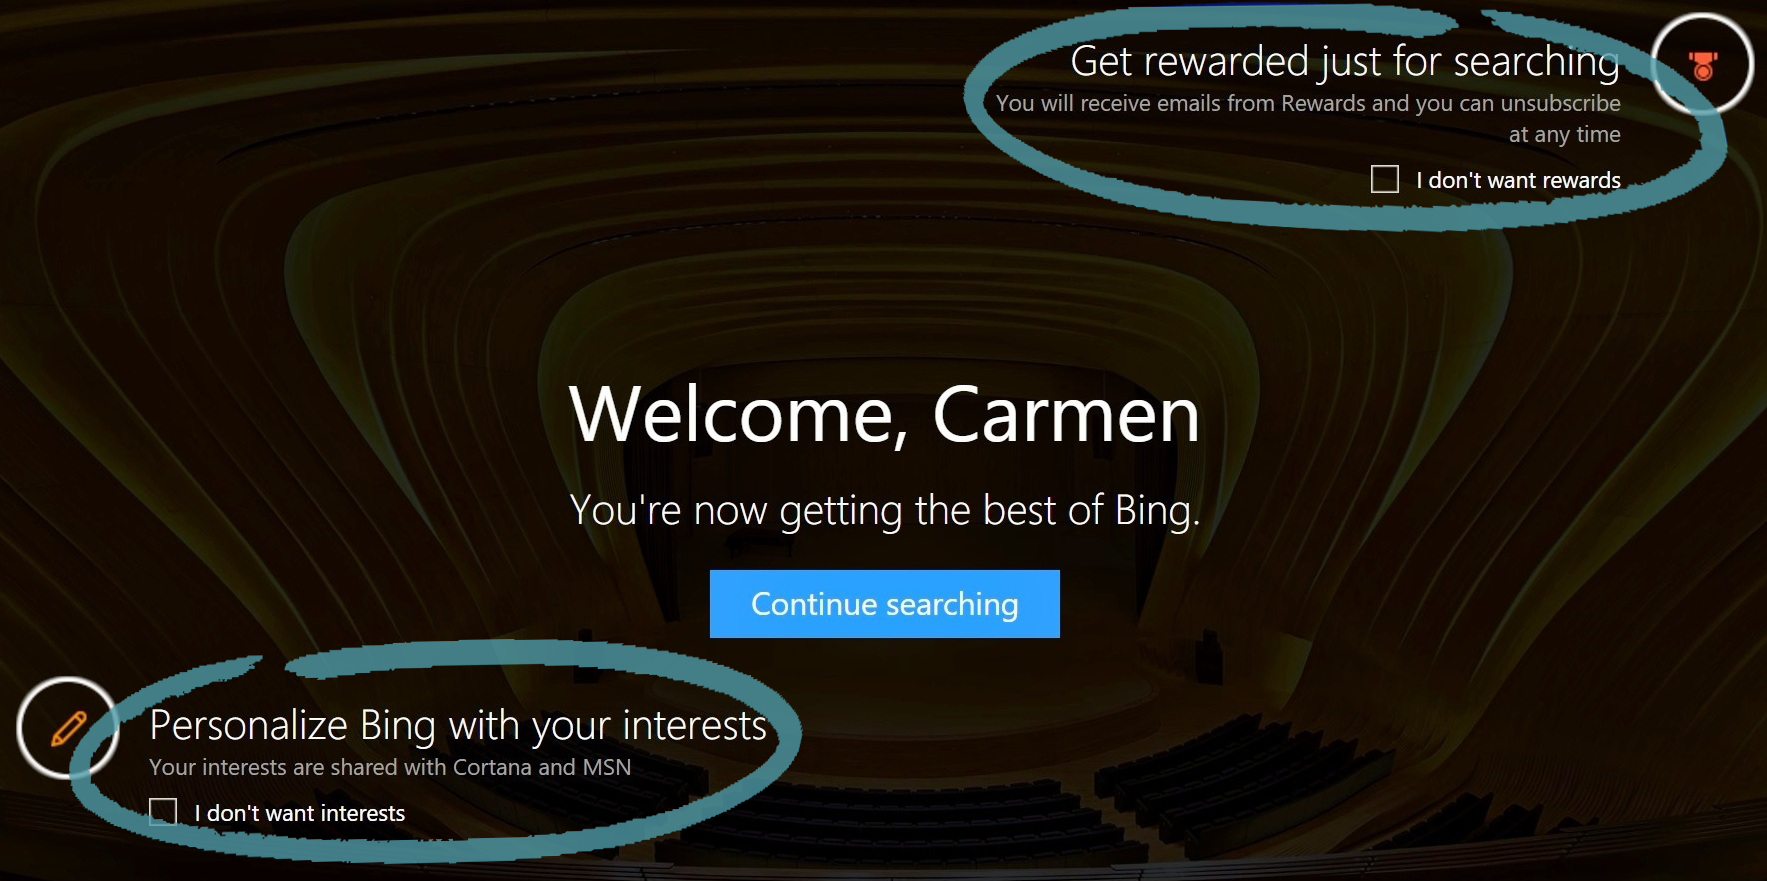 Home page do Bing com opção por participar ativamente nas Recompensas e nos Interesses